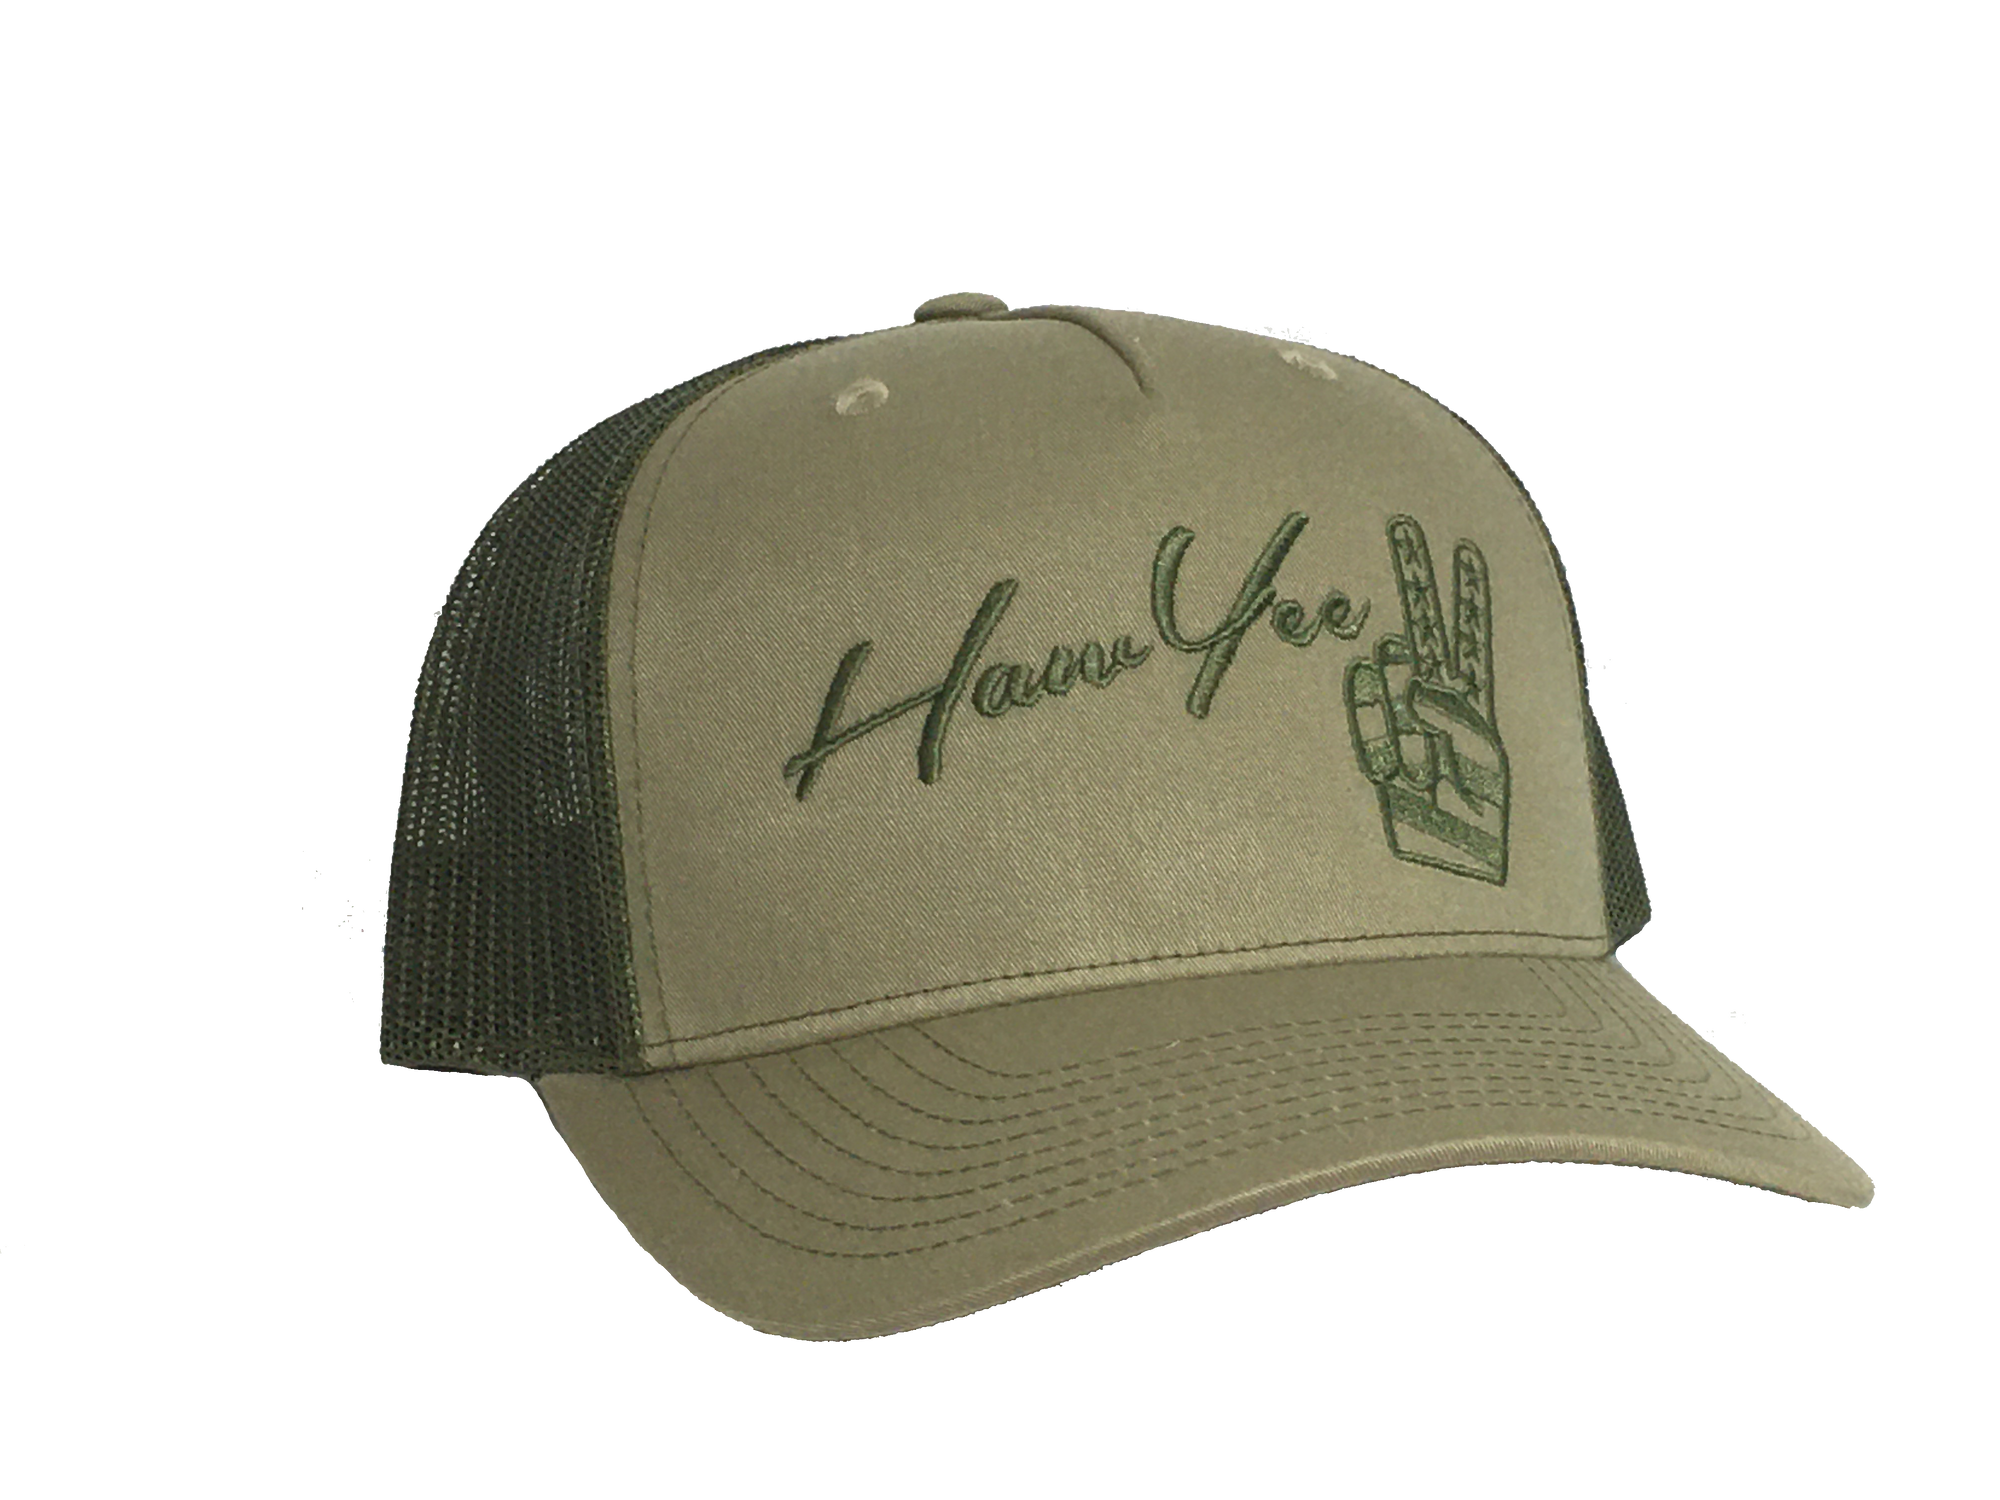 HawYee Trucker Hat